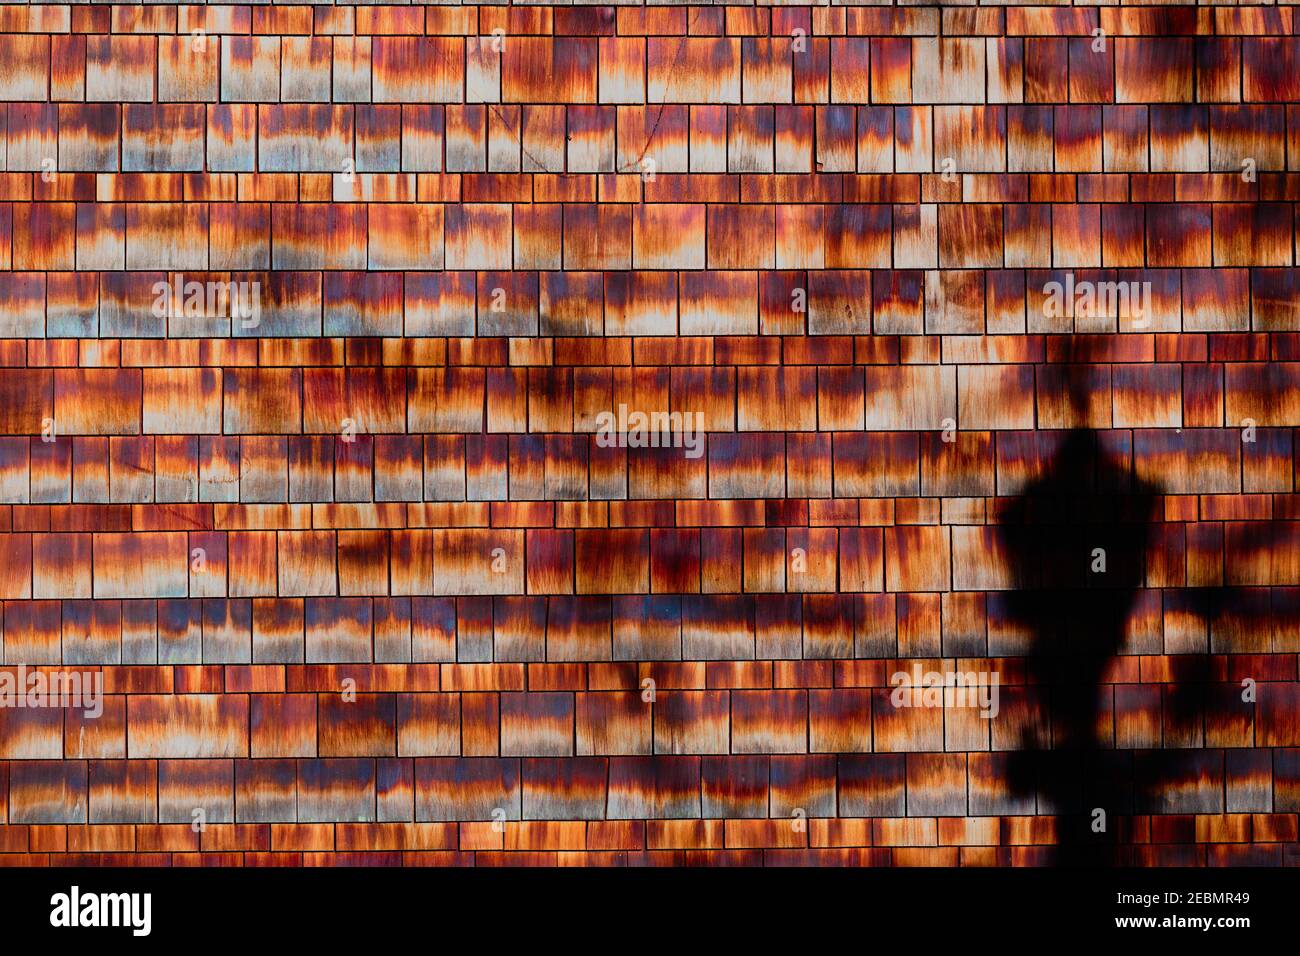 Des rangées nettes de bardeaux de cèdre - humides et abîmés - montrent une gamme de couleurs analogues de l'orange au marron. La lumière de la rue projette de l'ombre sur un coin. Banque D'Images